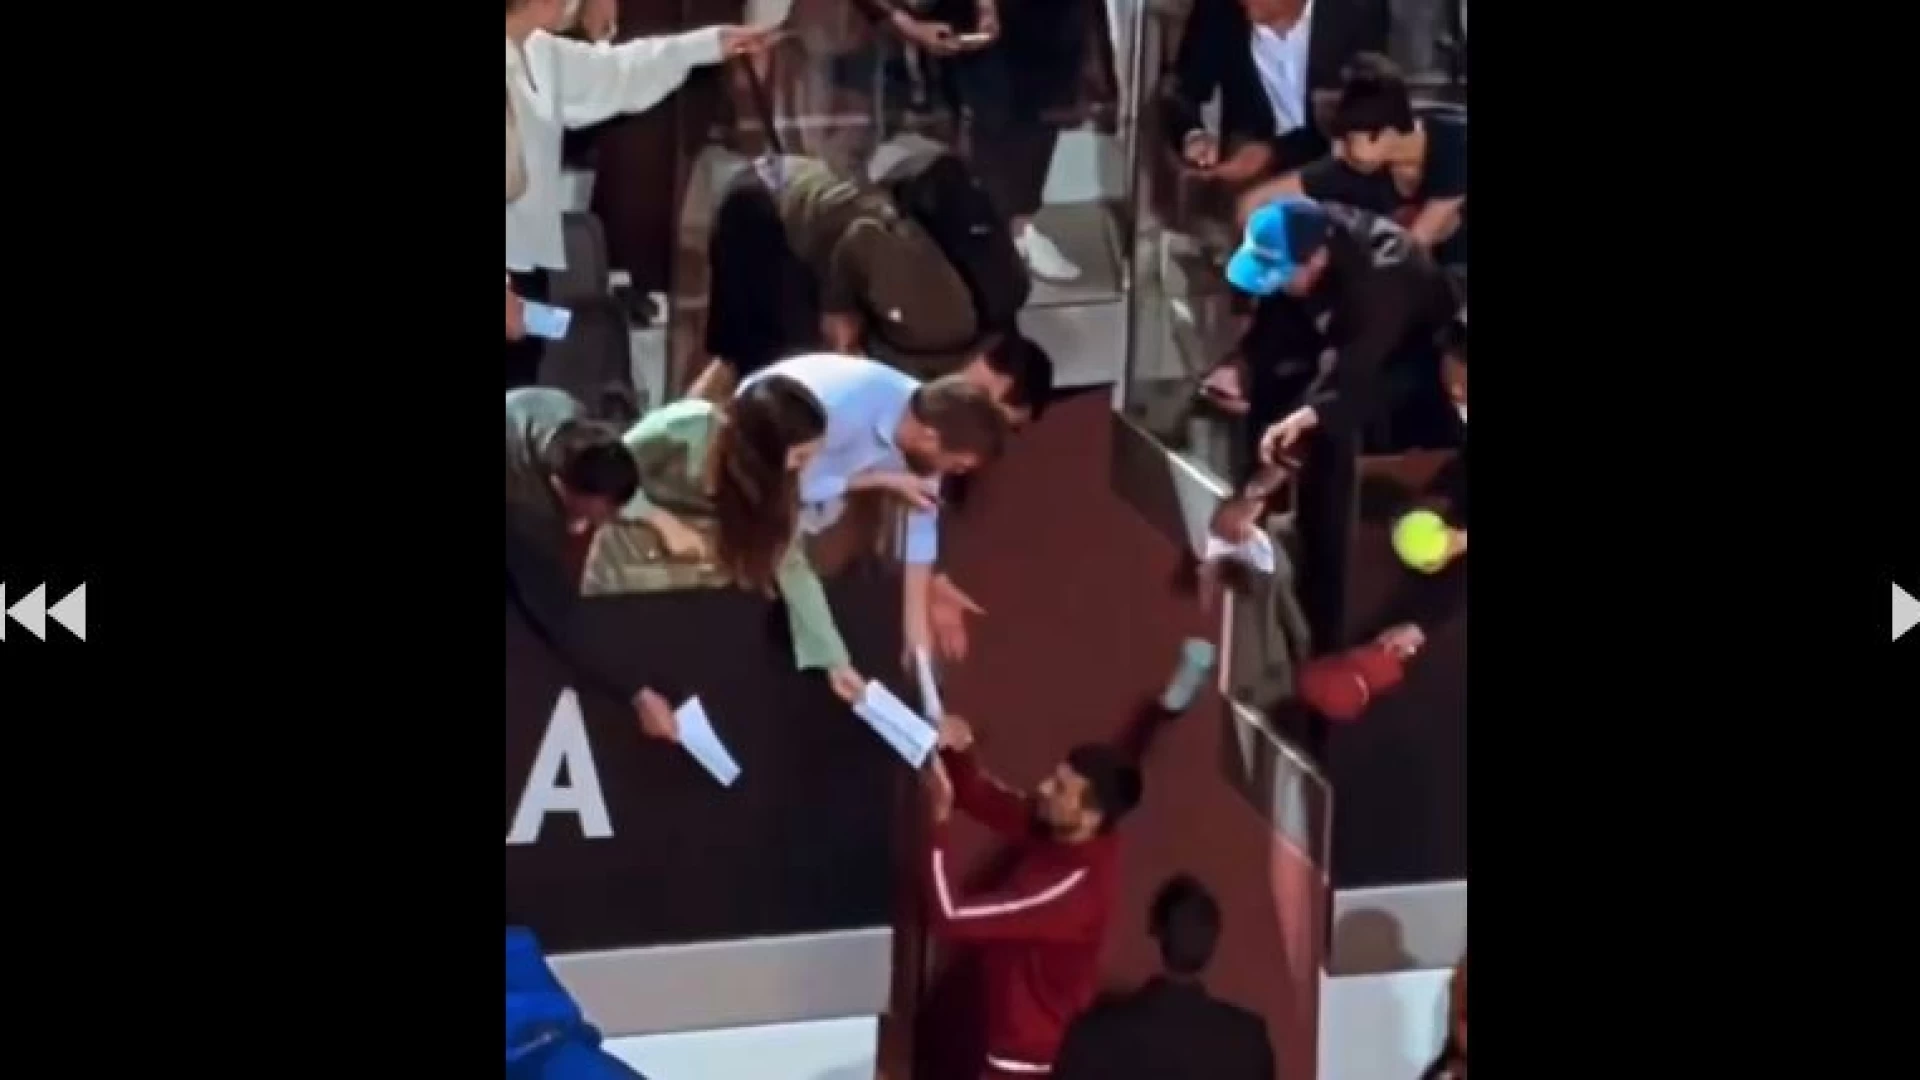 Internazionali di Roma, incredibile quello che e’ accduto. Djokovic colpito accidentalmente in testa da una borraccia a fine match. L’oggetto caduto al Falco Mario Ferri che tentava di scattare una foto al campione.